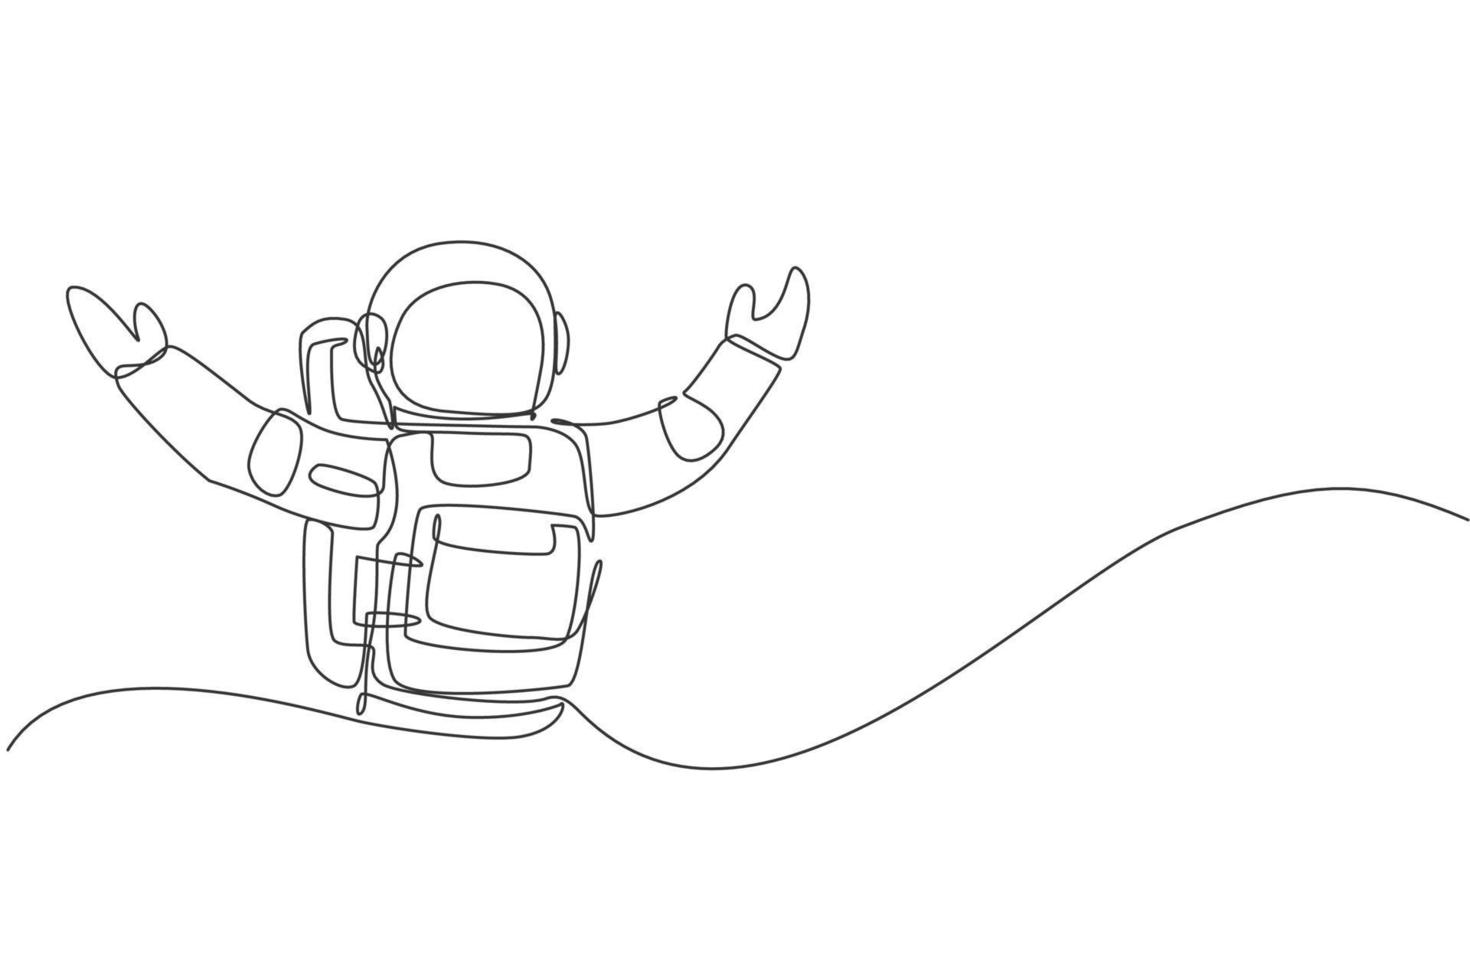 enkele doorlopende lijntekening van astronaut opent zijn handen klaar om te knuffelen in het maanoppervlak. zakelijk kantoor met galaxy outer space concept. trendy één lijn tekenen ontwerp grafische vectorillustratie vector